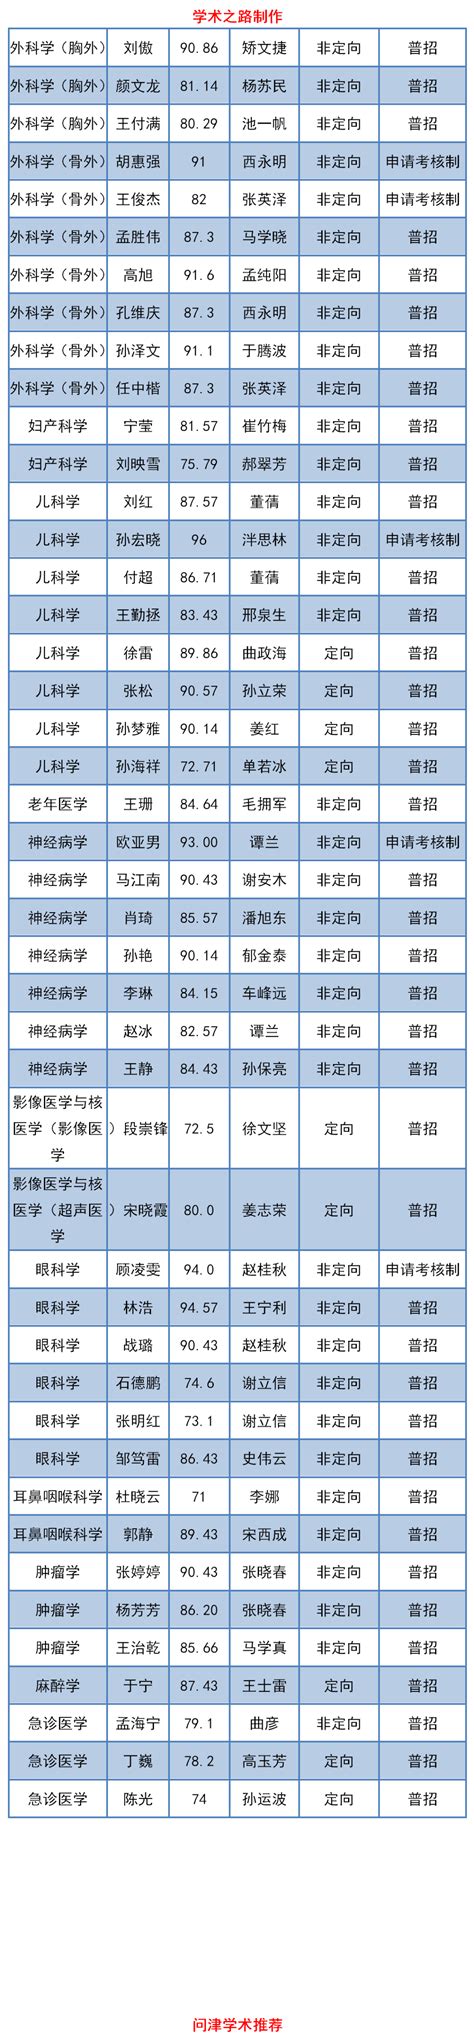 青岛大学2020年全日制博士研究生拟录取名单公示 | 自由微信 | FreeWeChat